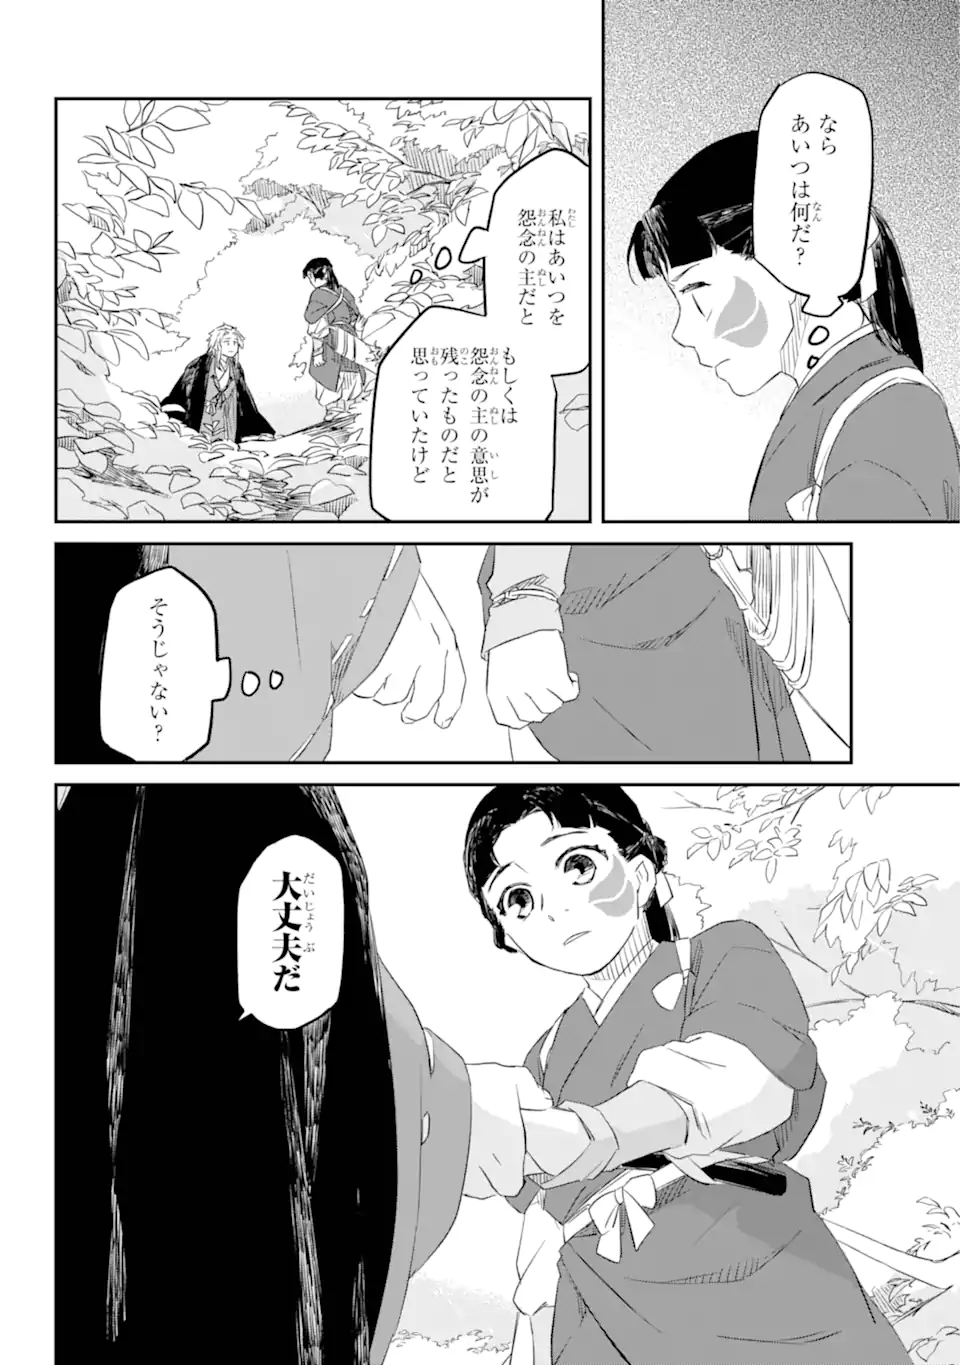 Ryuujin no Musume - Chapter 4.3 - Page 2